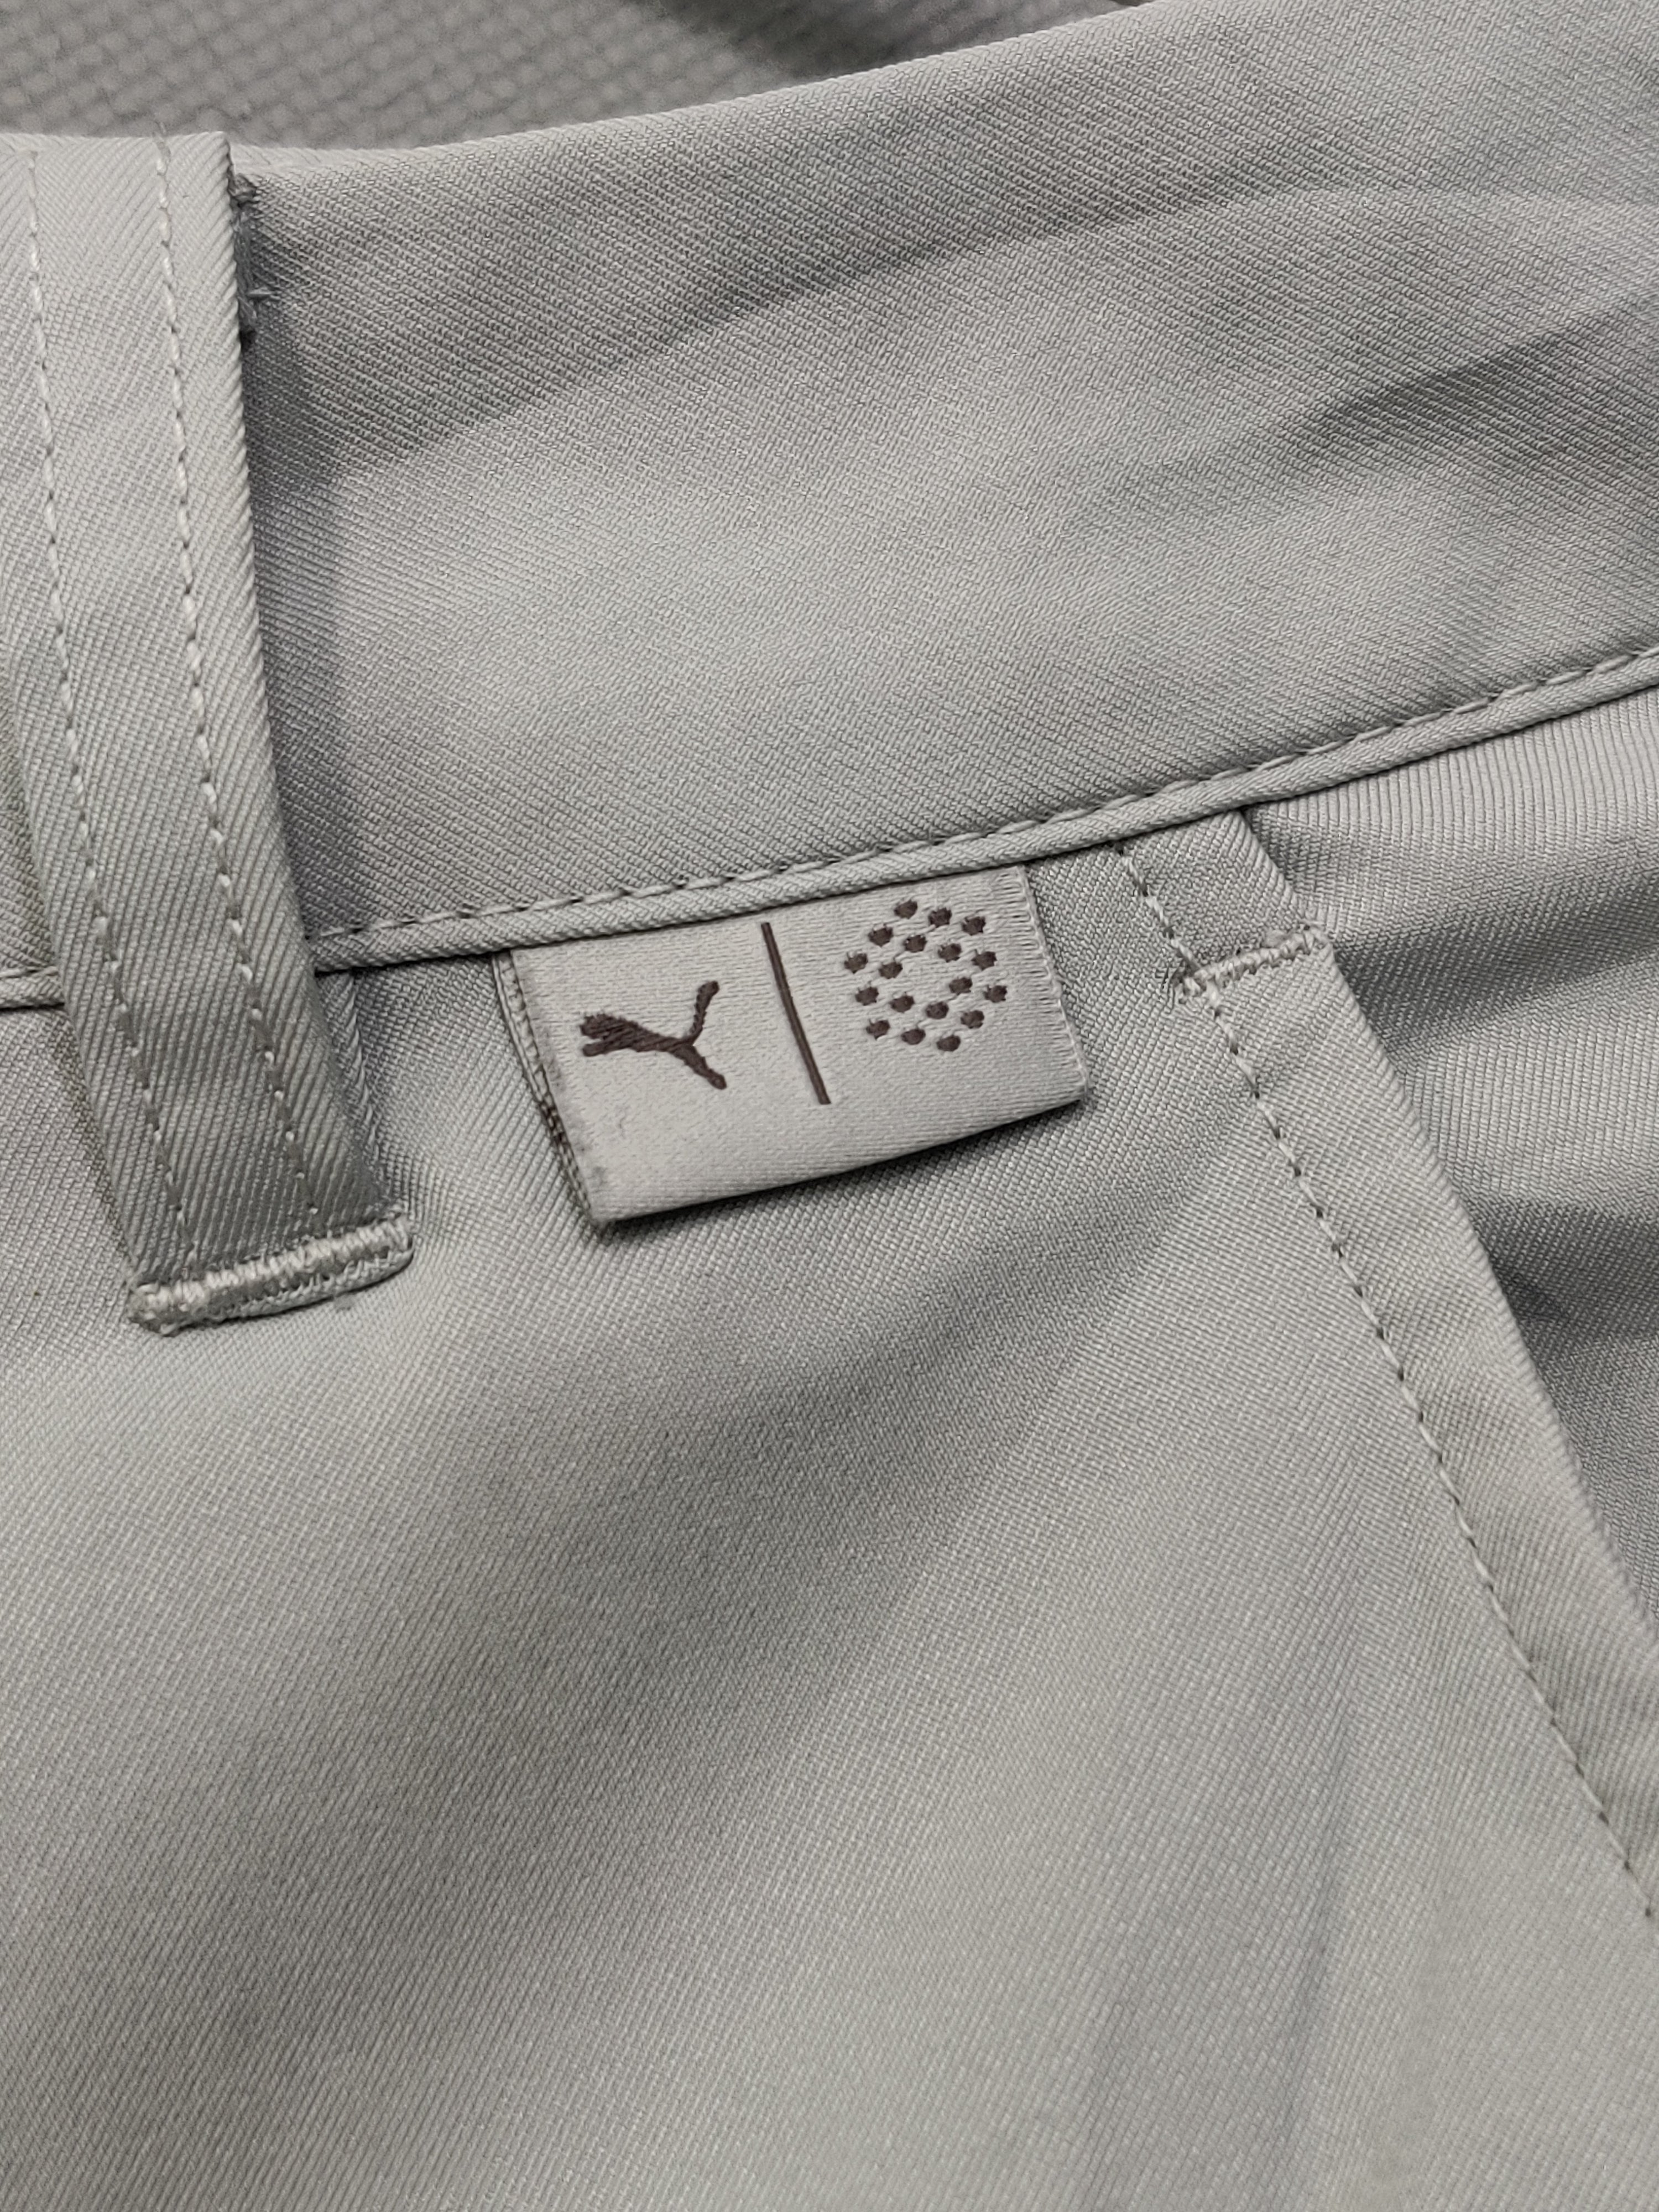 Puma Branded Original Cotton Short For Men